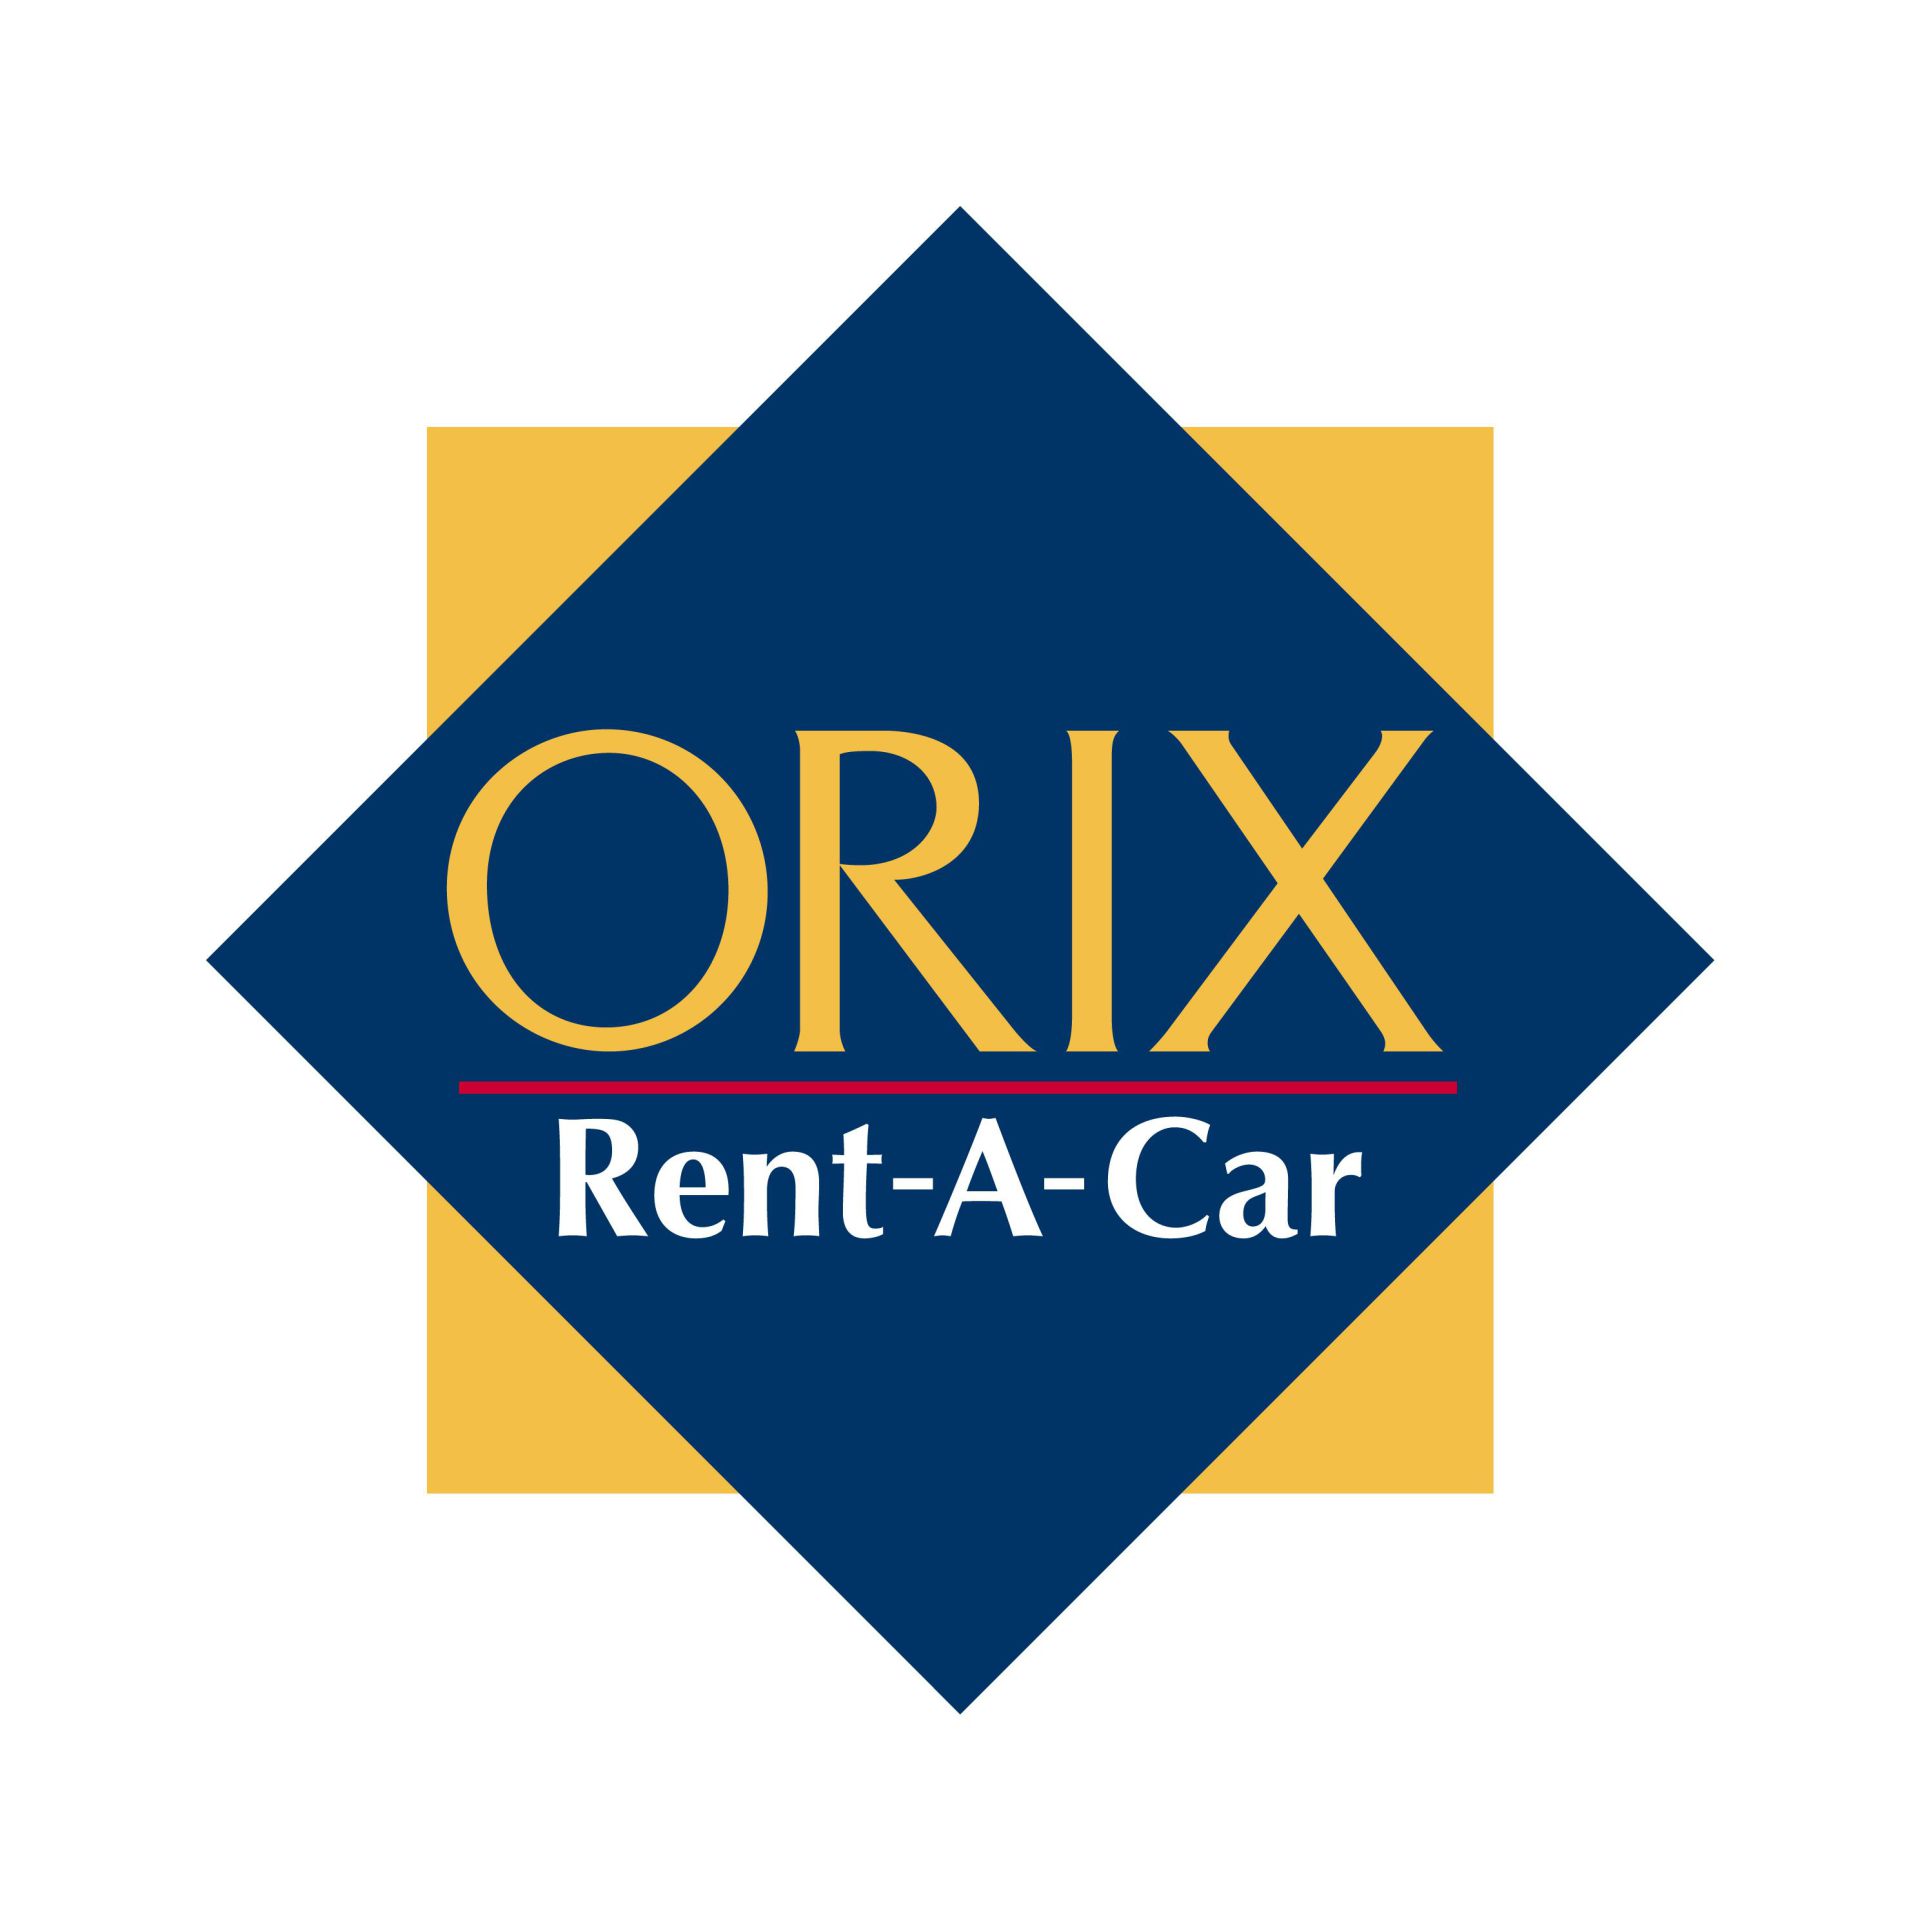 ORIX Rent-A-Car Shin-Kobe